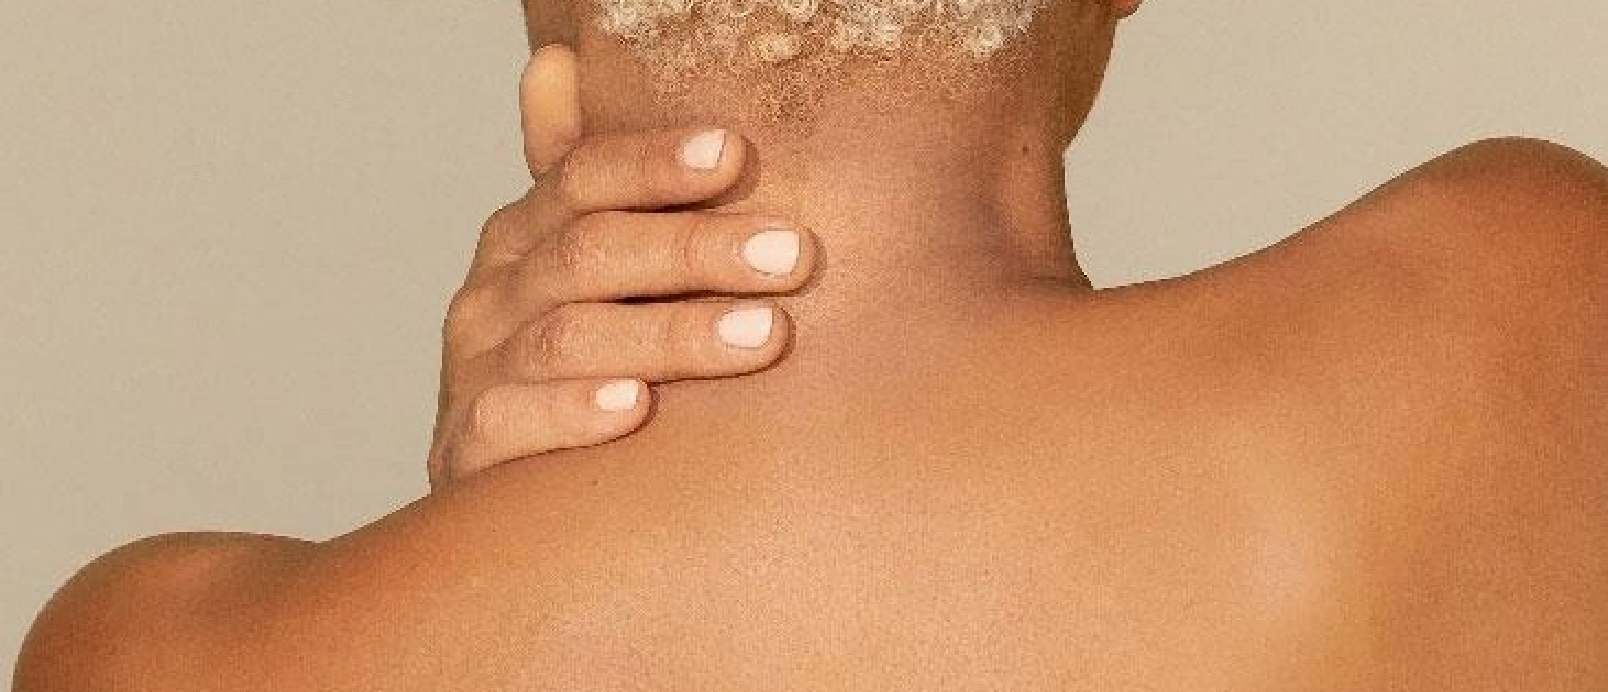 Tono y textura de la piel del cuello y el hombro de una mujer